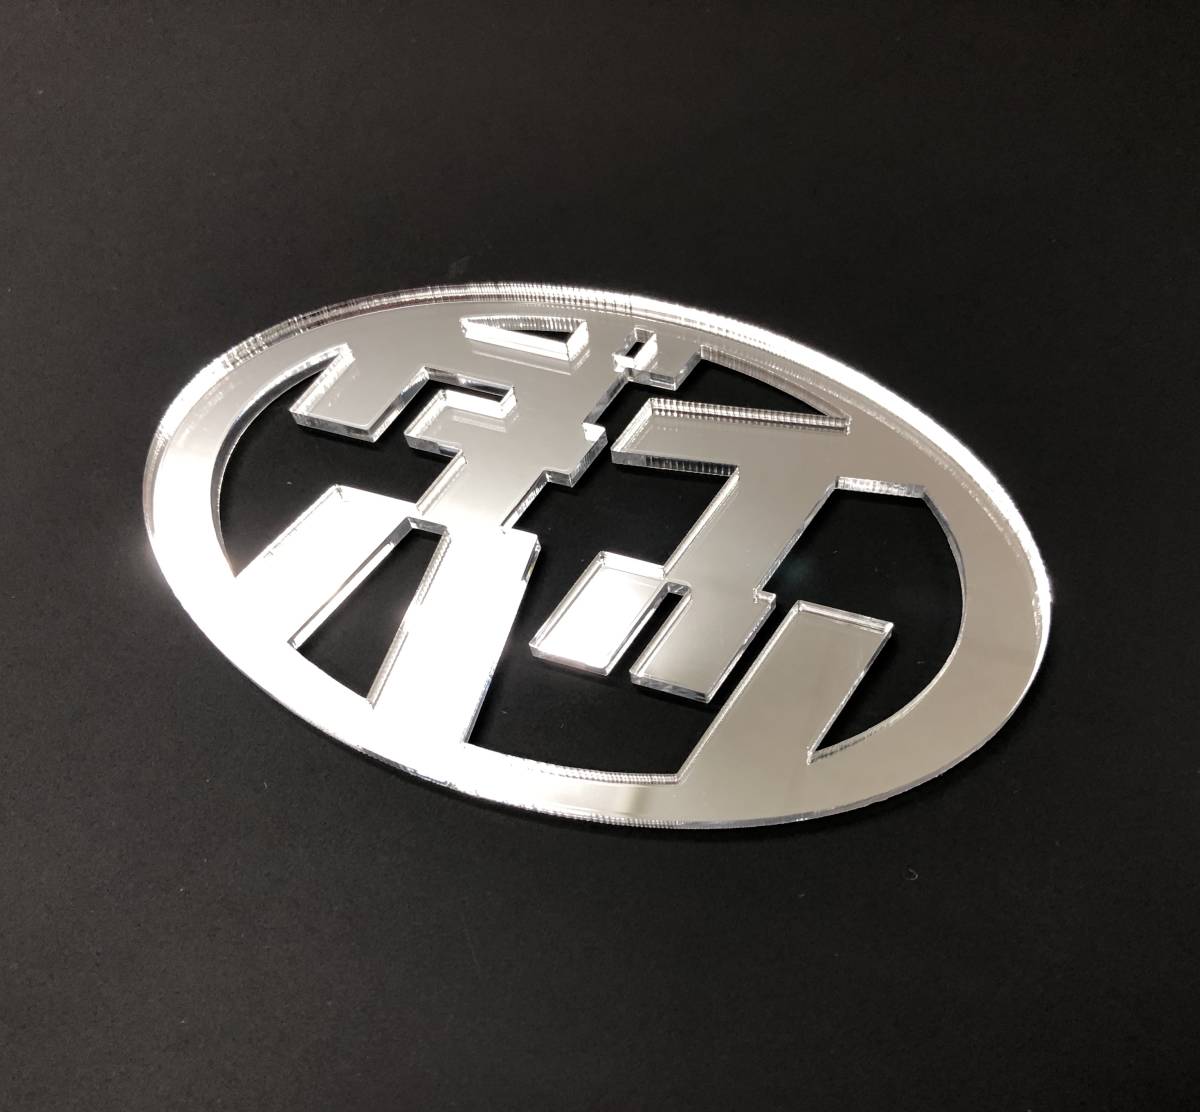  Daihatsu эмблема акриловая пластина 3mm матовый черный 110mm×67mm цвет модификация, размер модификация возможность!